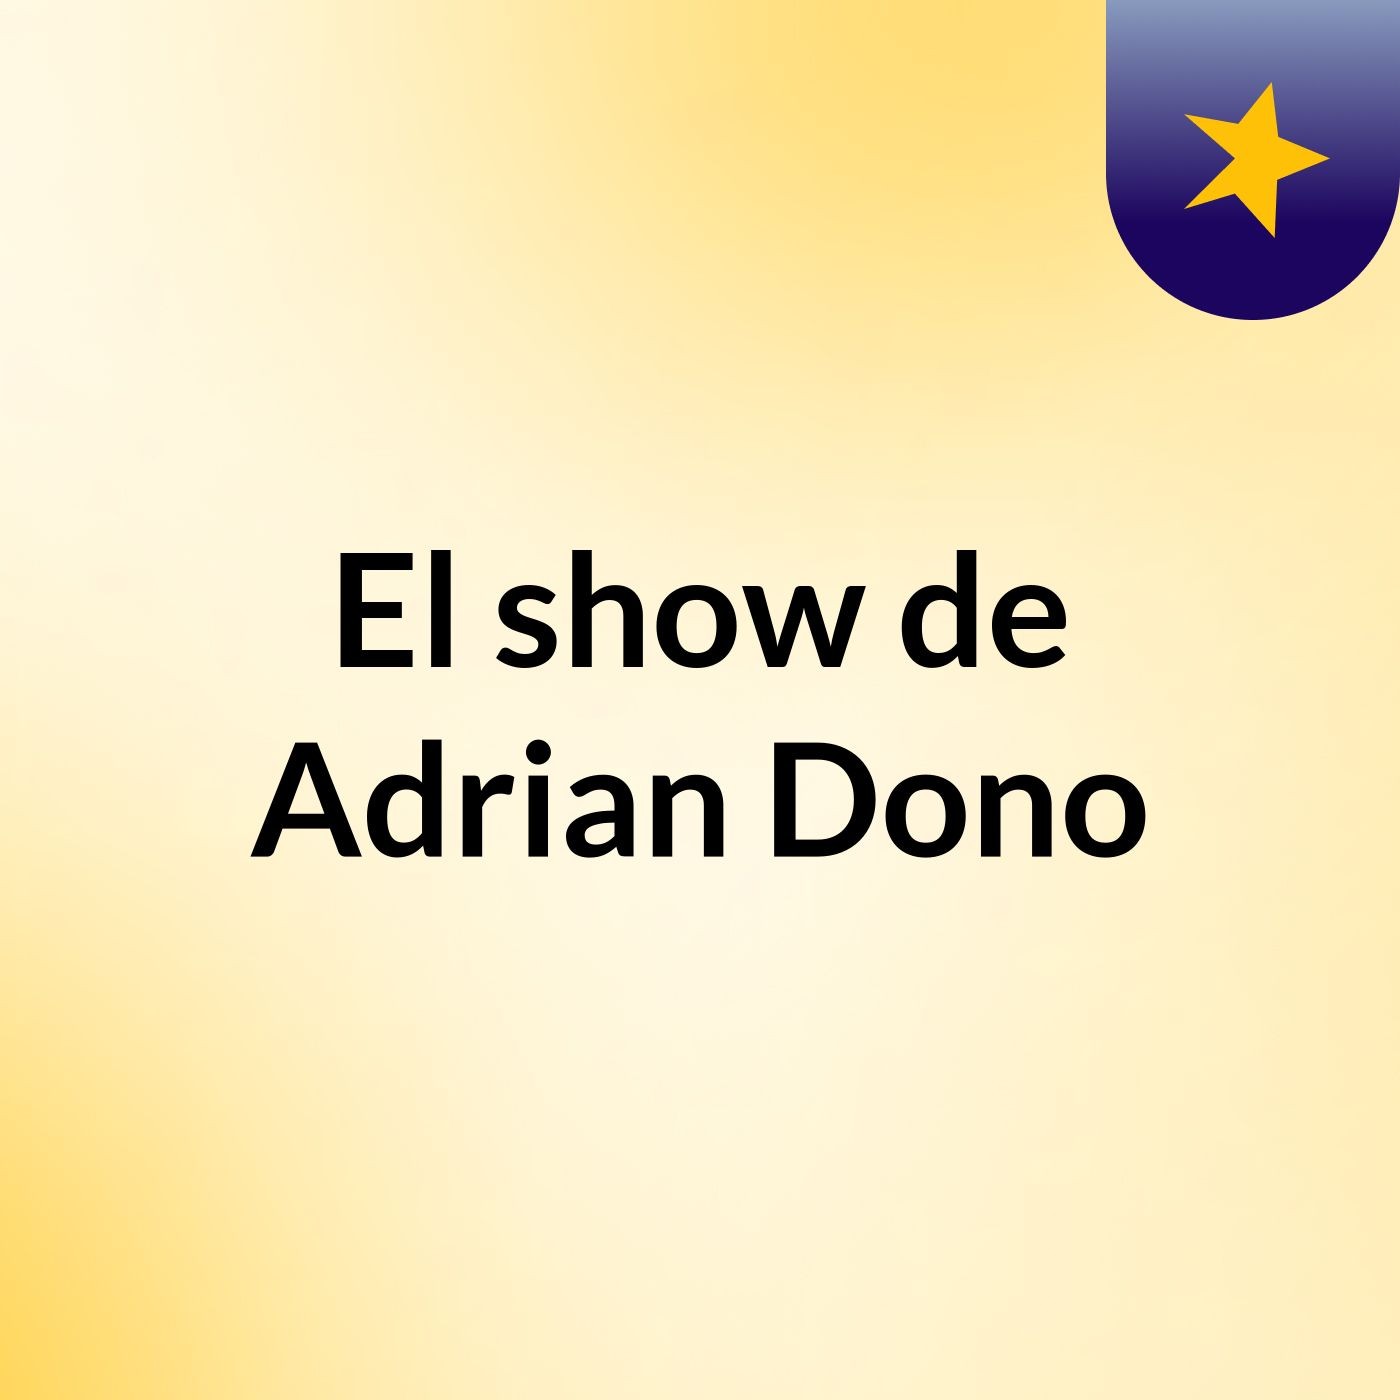 El show de Adrian Dono